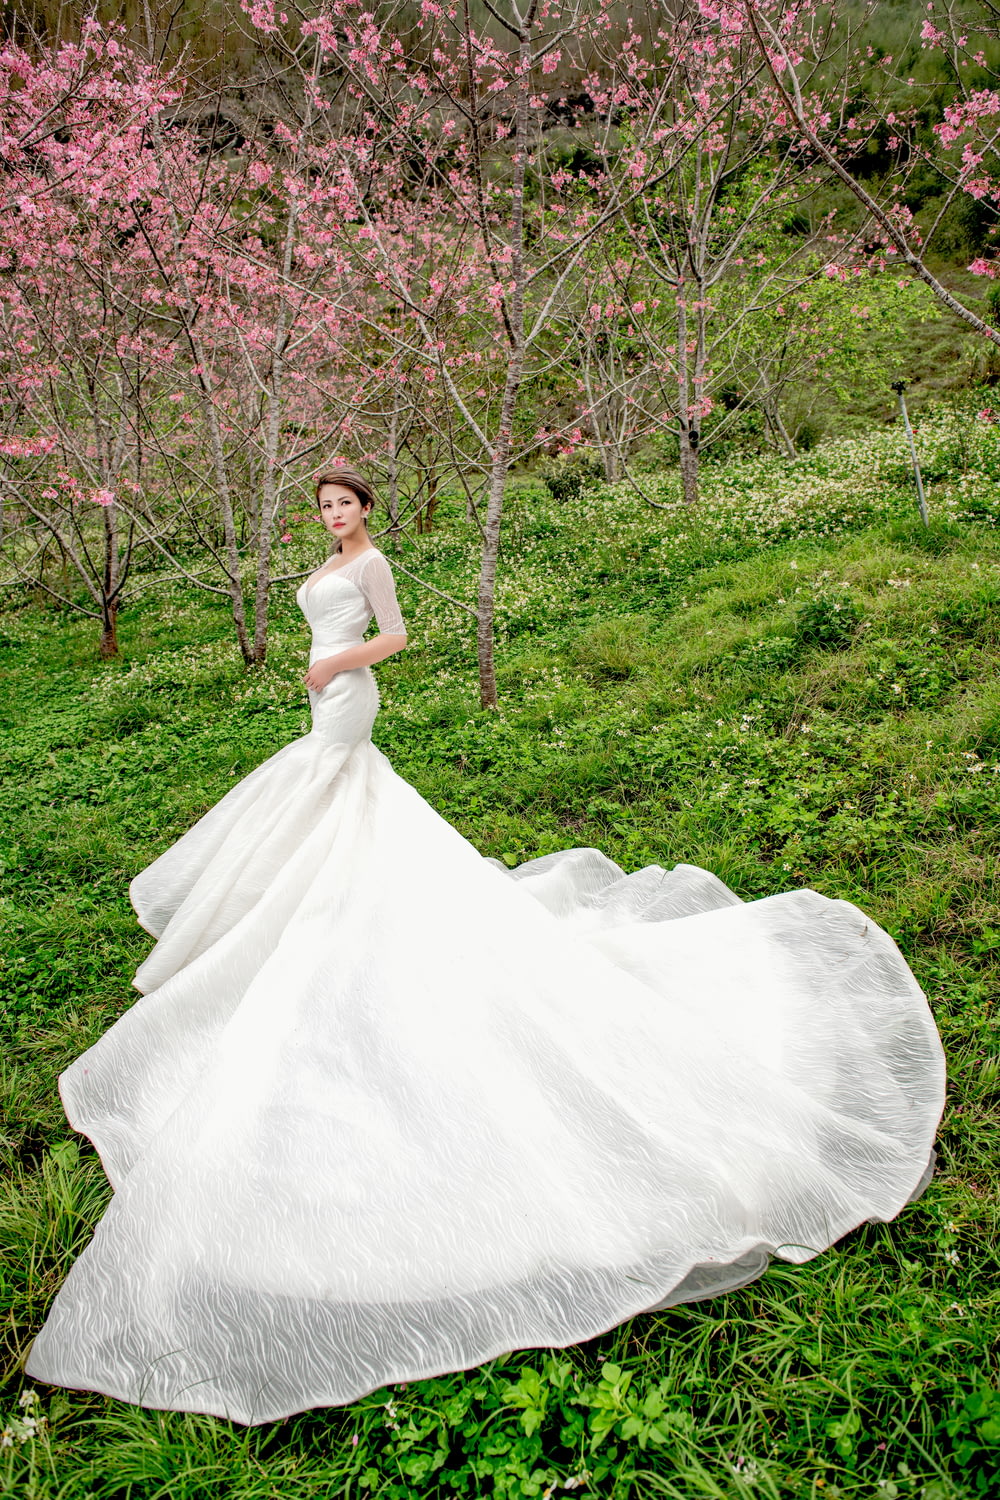 woman wearing white wedding dress standing near pink flowering trees